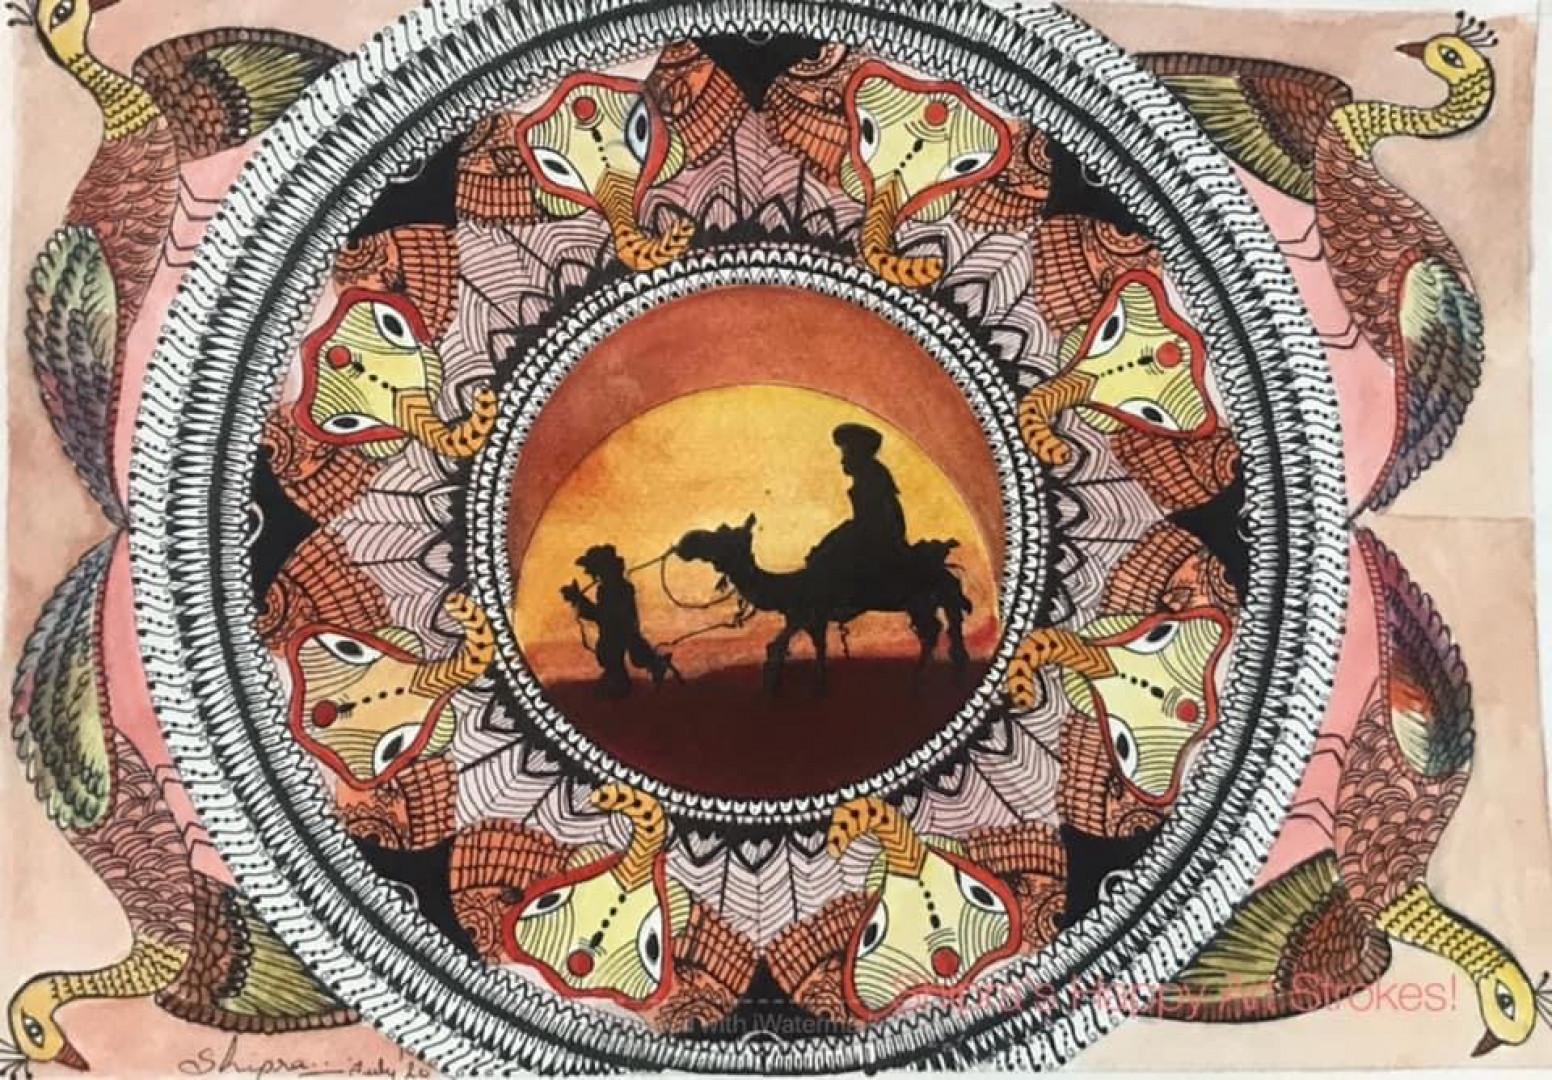 Rajasthani tales: mixed media painting